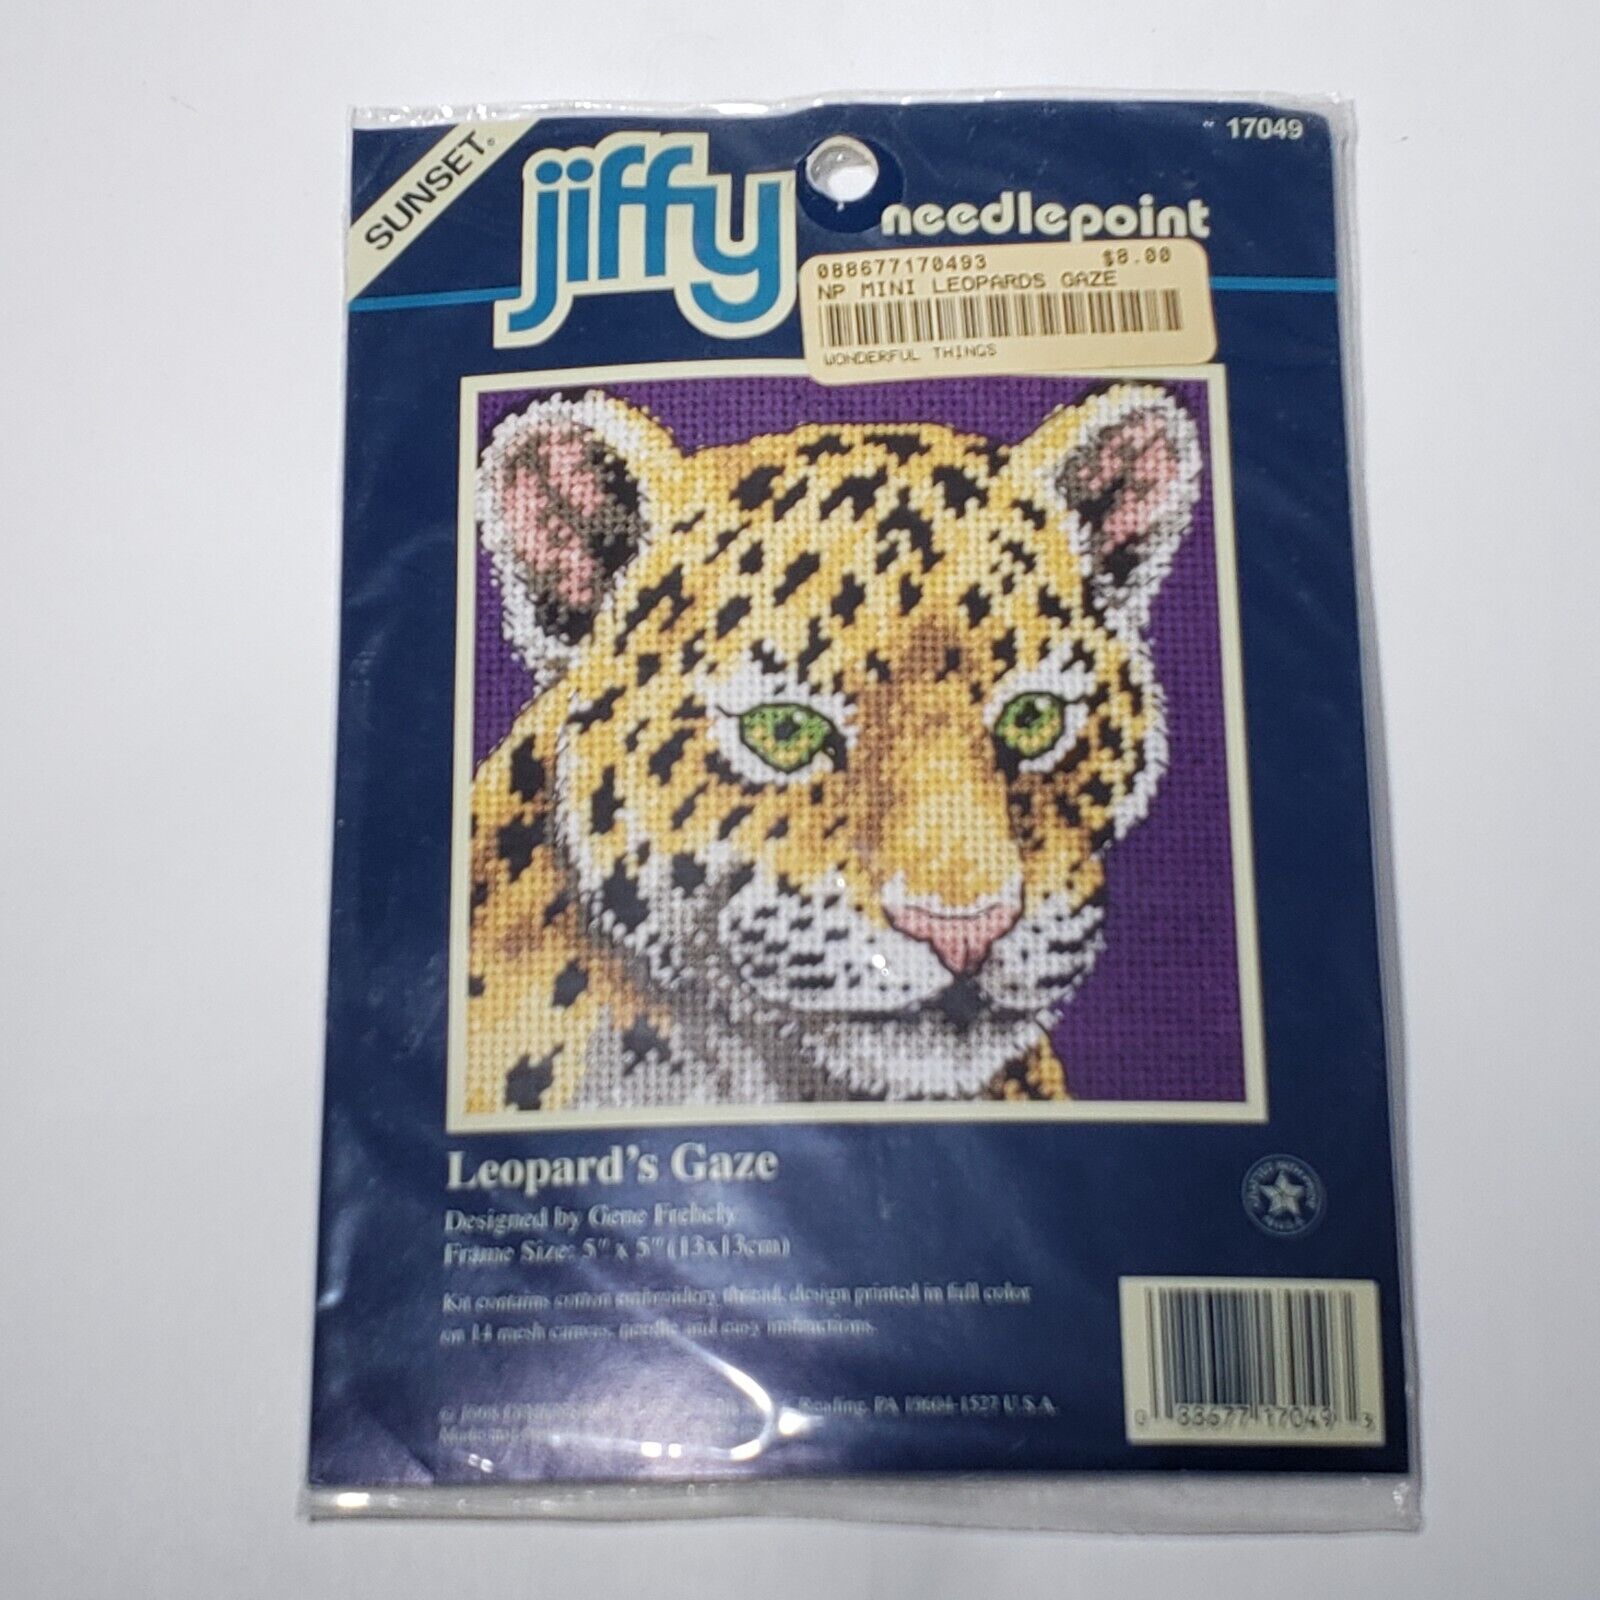 VTG 1998 Sunset Jiffy Leopard's Gaze 5" Needlepoint Kit 17049 NIP Sealed - $9.95